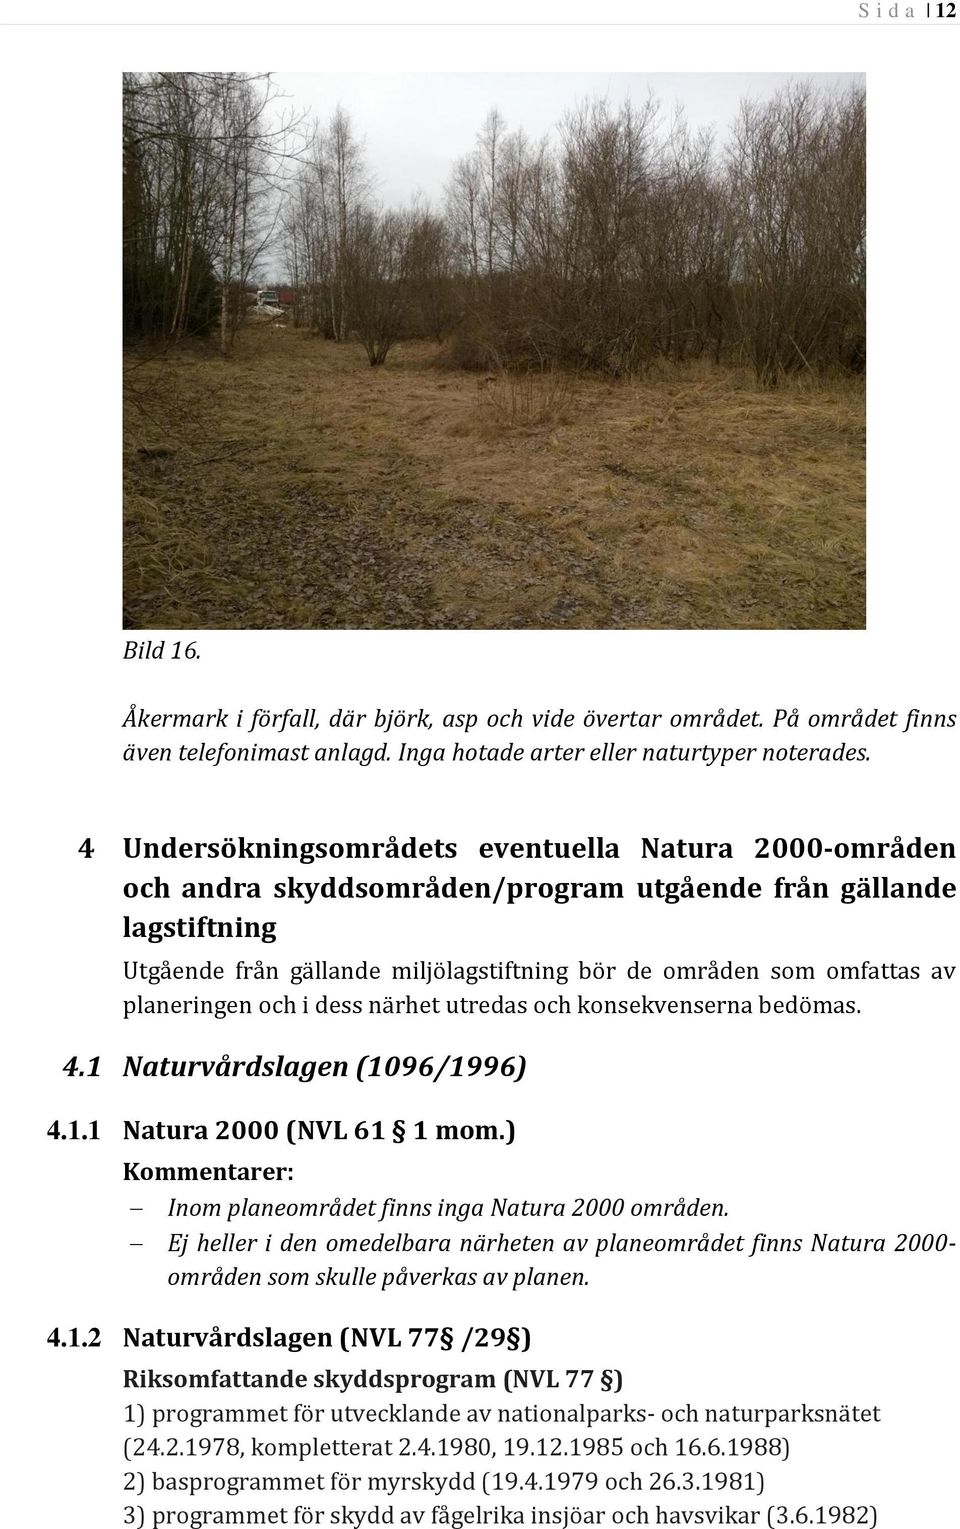 planeringen och i dess närhet utredas och konsekvenserna bedömas. 4.1 Naturvårdslagen (1096/1996) 4.1.1 Natura 2000 (NVL 61 1 mom.) Kommentarer: Inom planeområdet finns inga Natura 2000 områden.